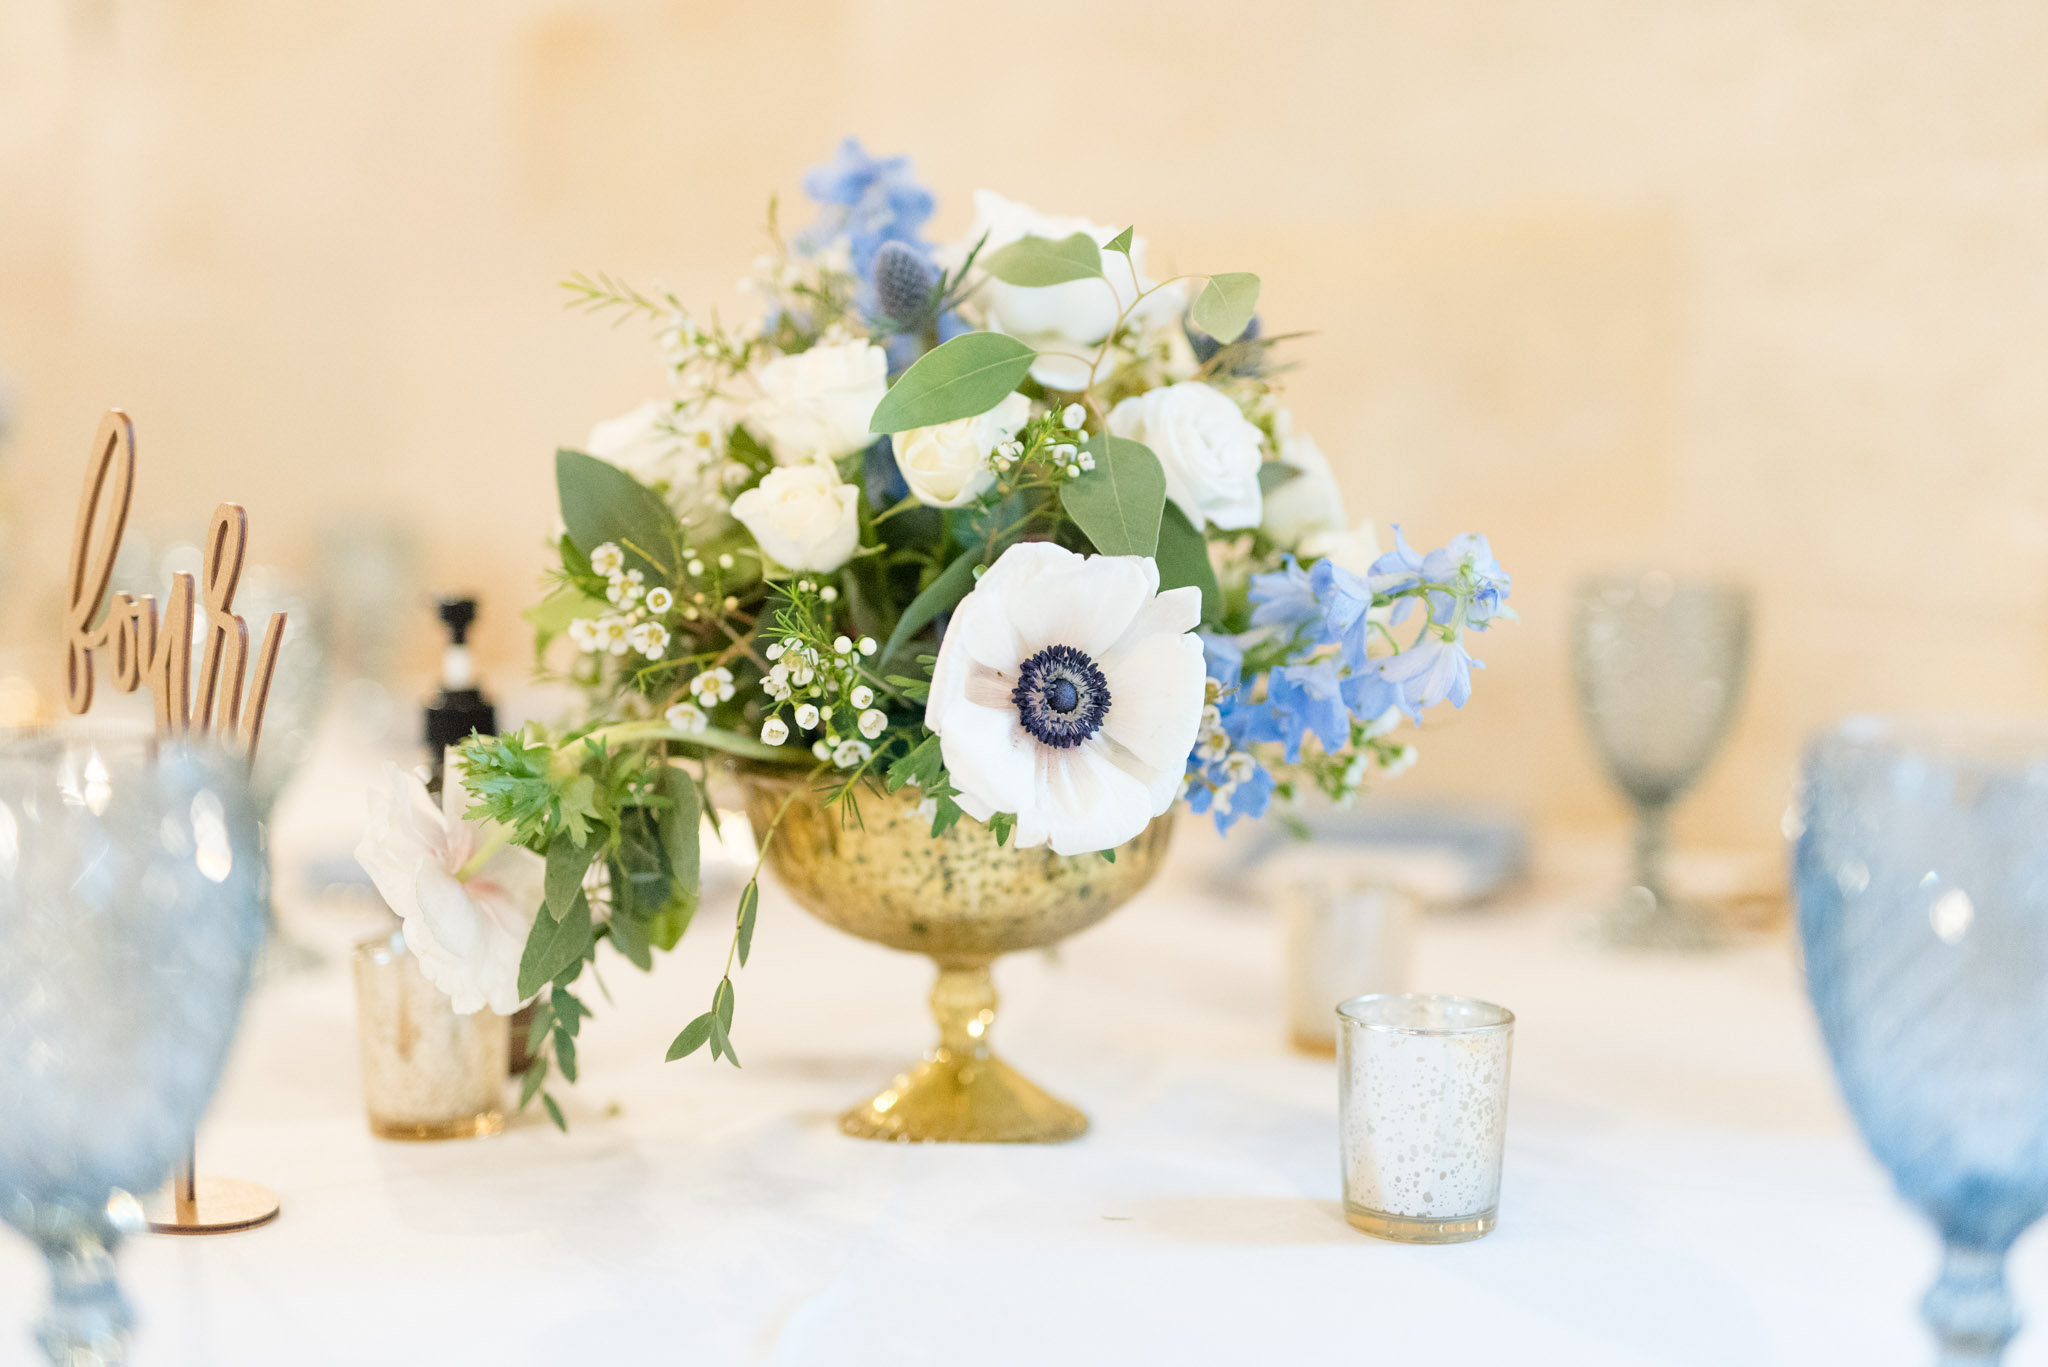 Reception floral table arrangement.